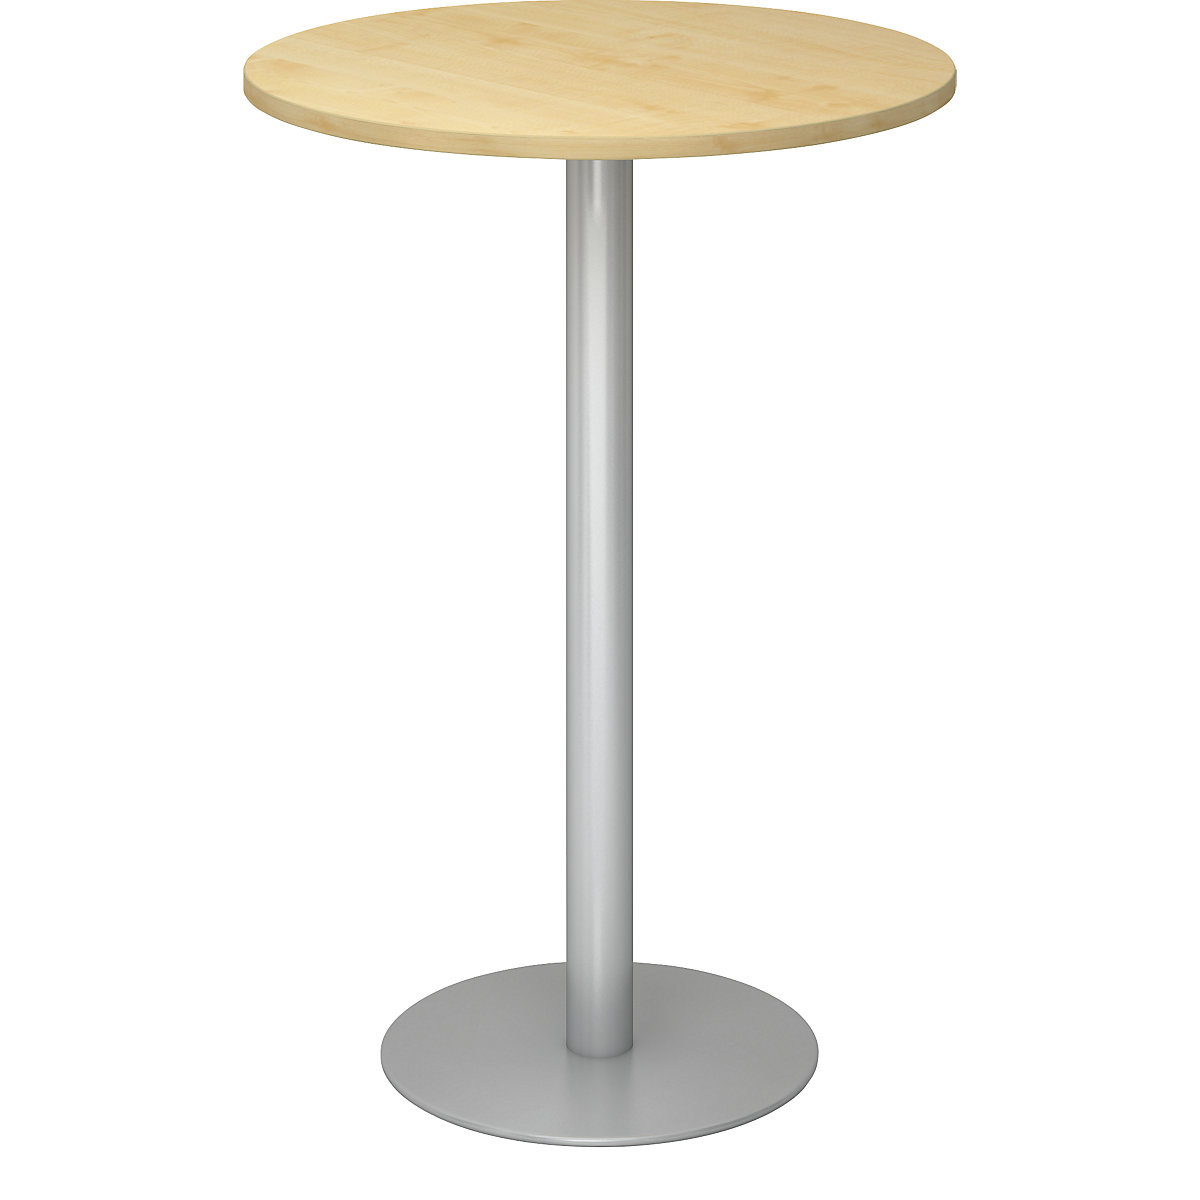 Állóasztal, Ø 800 mm, 1116 mm magas, ezüst váz, juhar-dekor asztallap